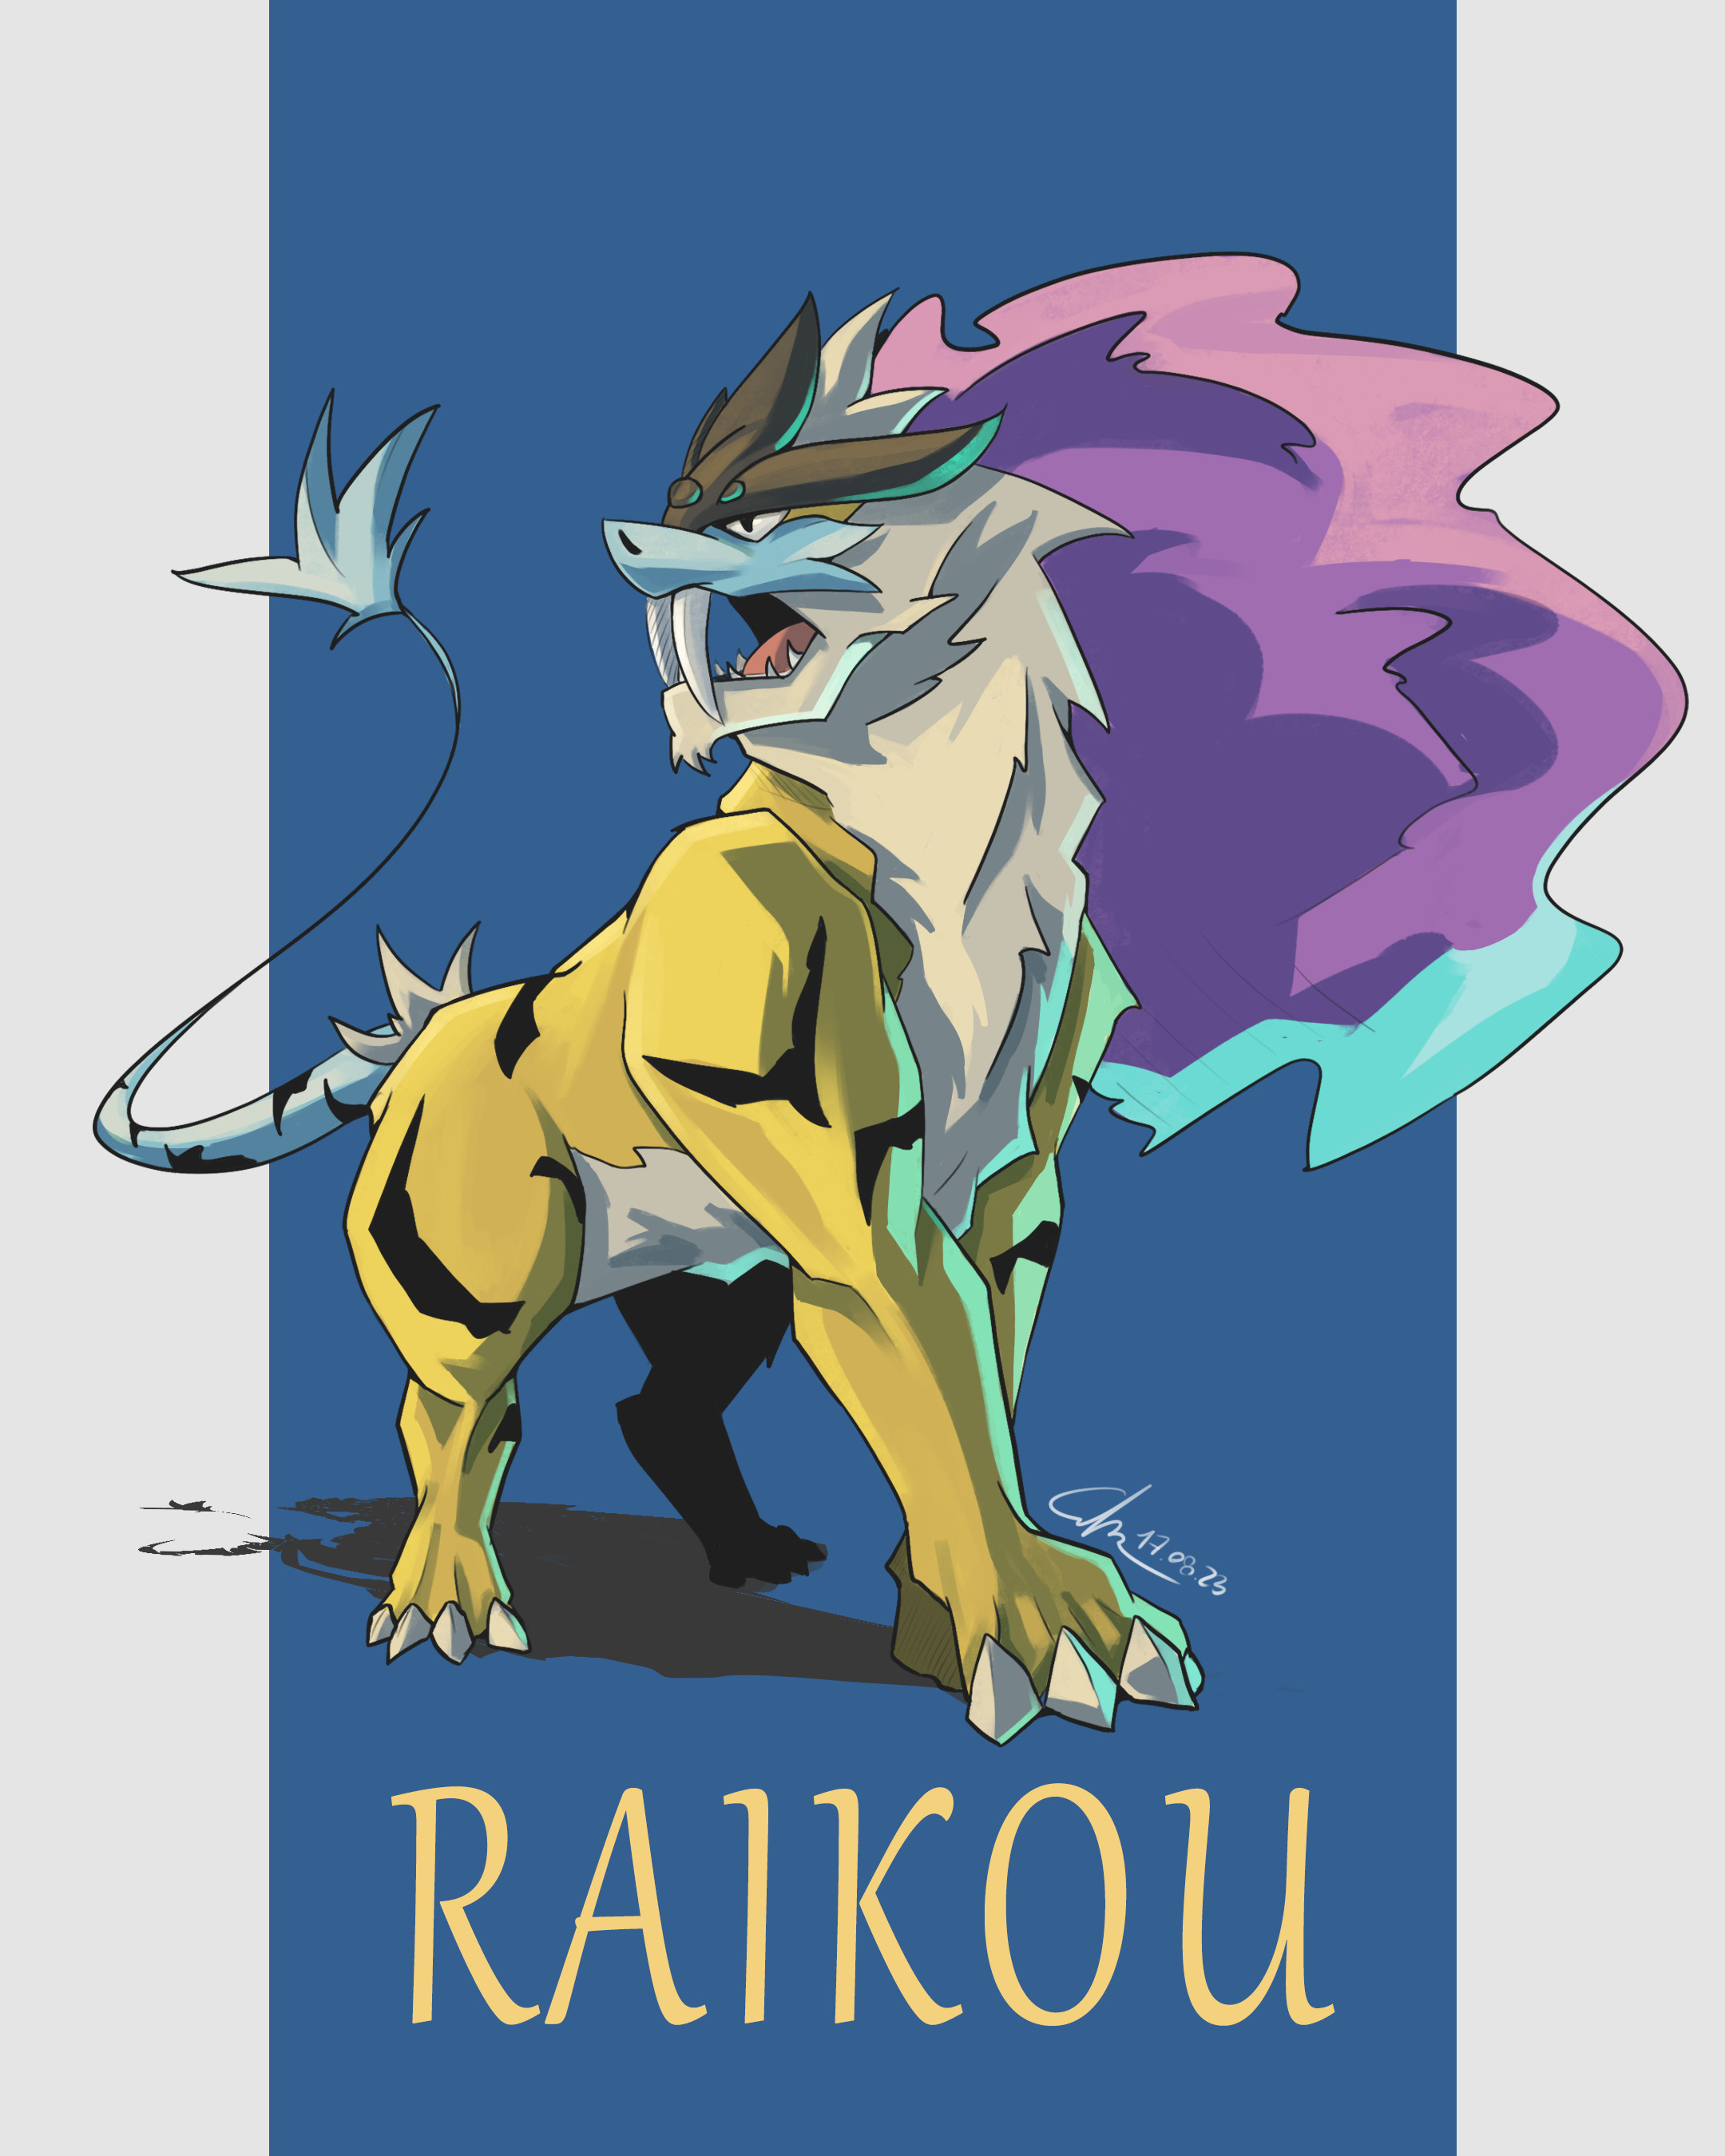 Raikou paradox form commission [OC] : r/pokemon